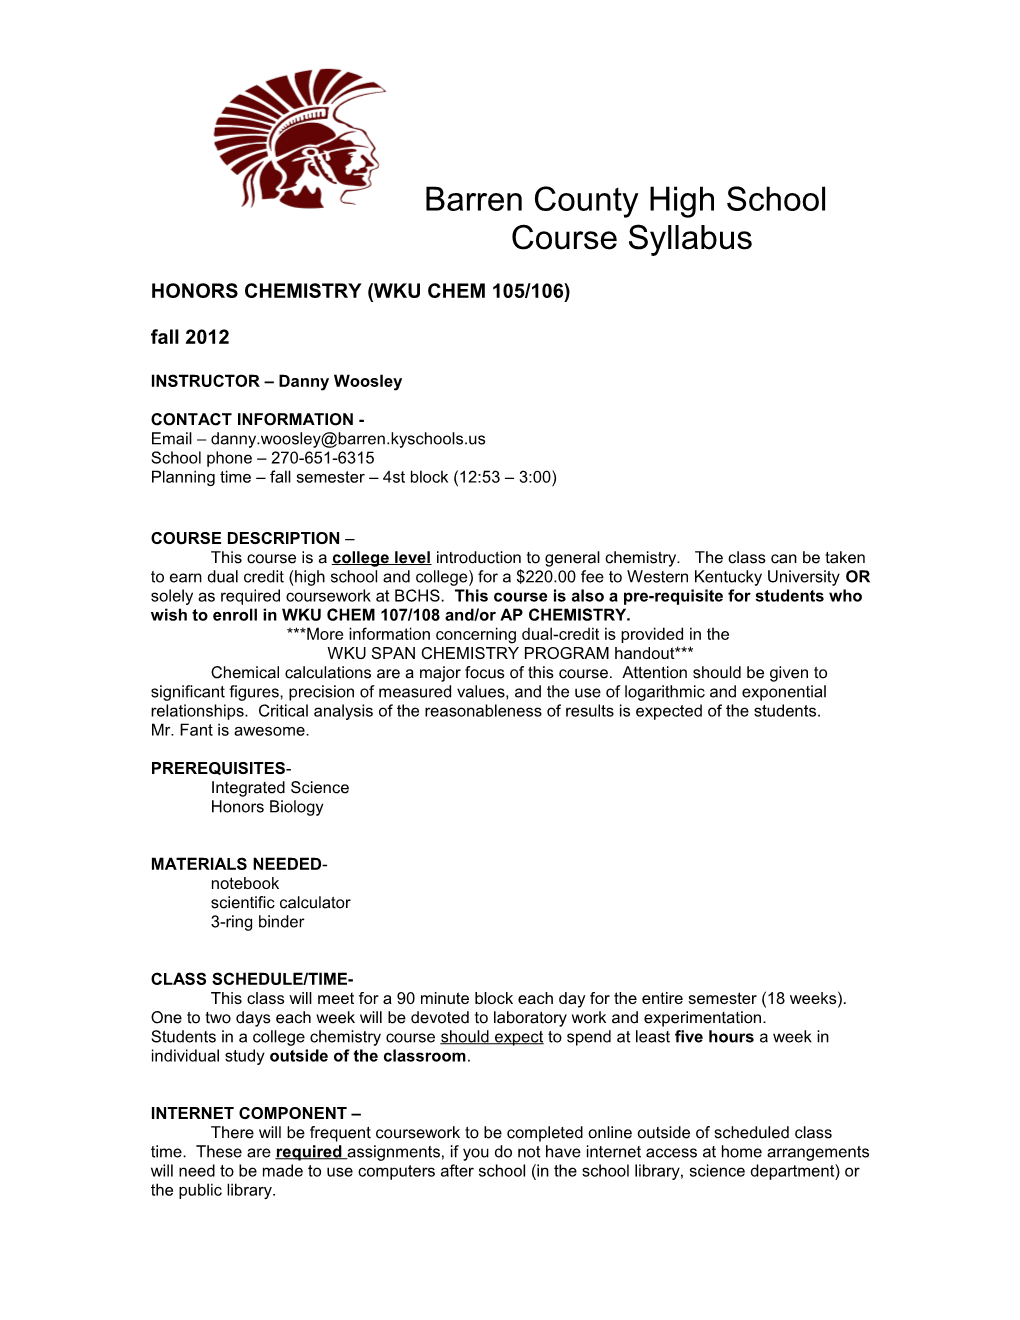 Barren County High School s1